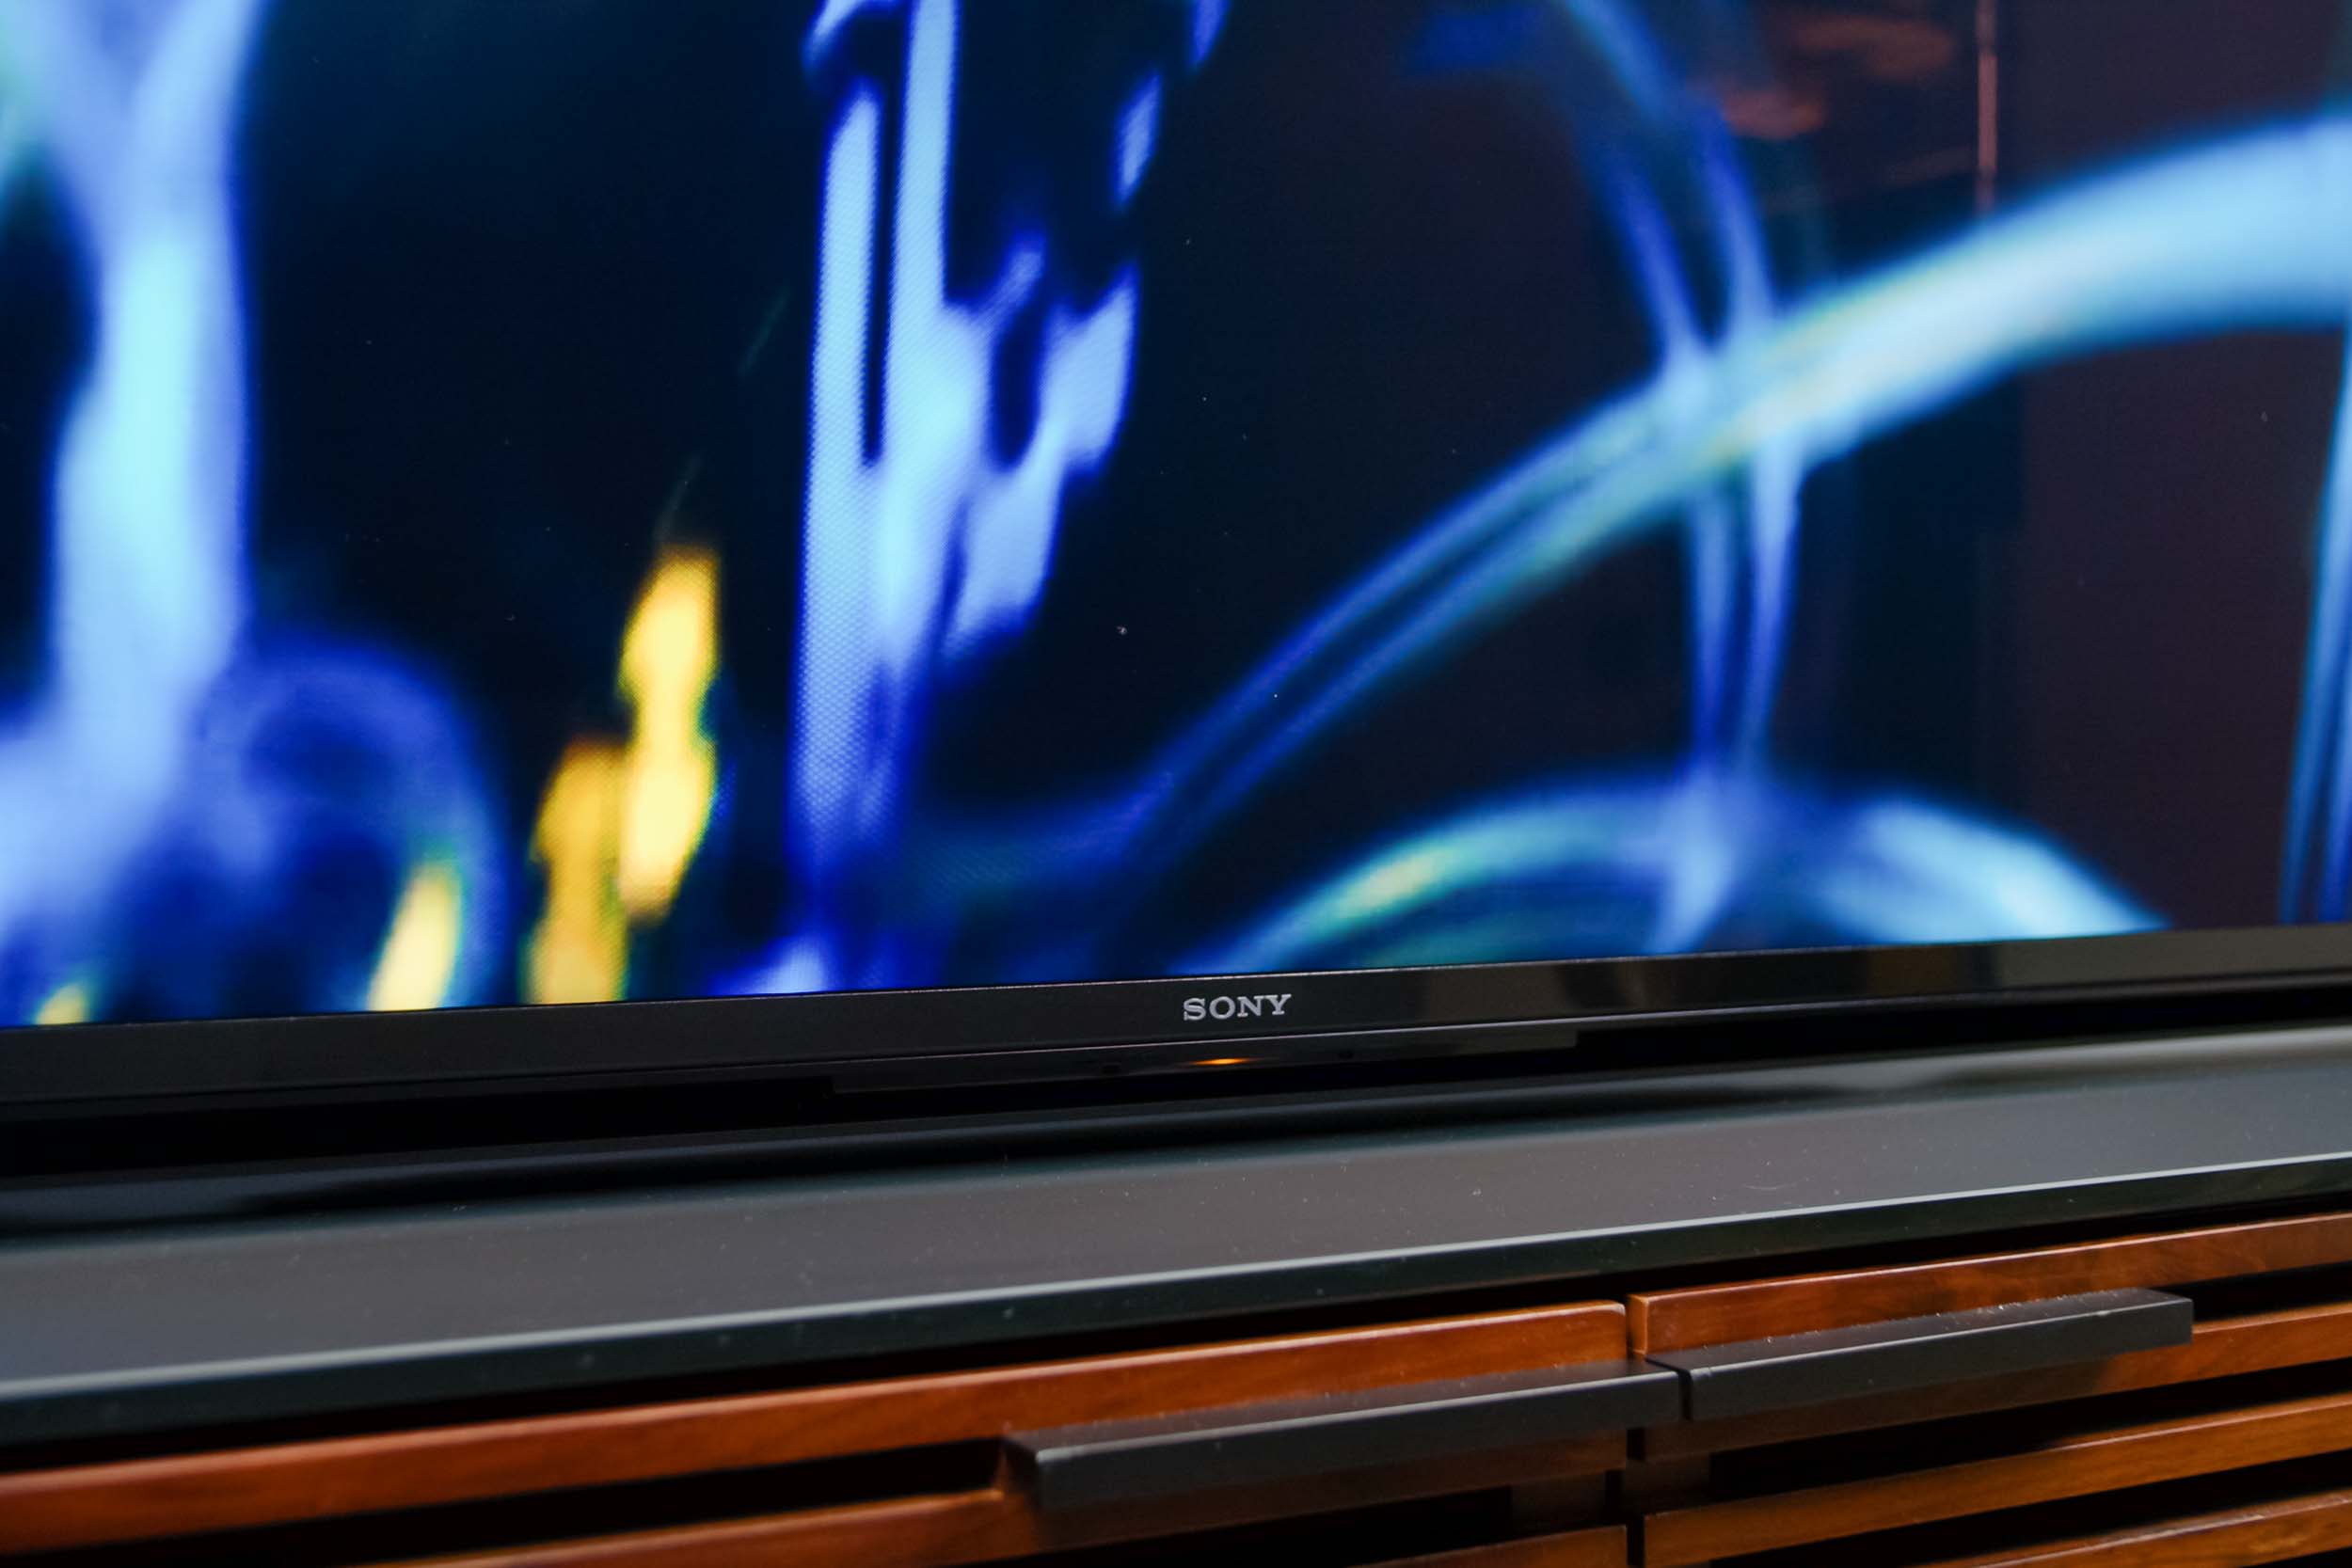 Sony Bravia XR Z9J Master Series 8K HDR TV Review | Digital Trends